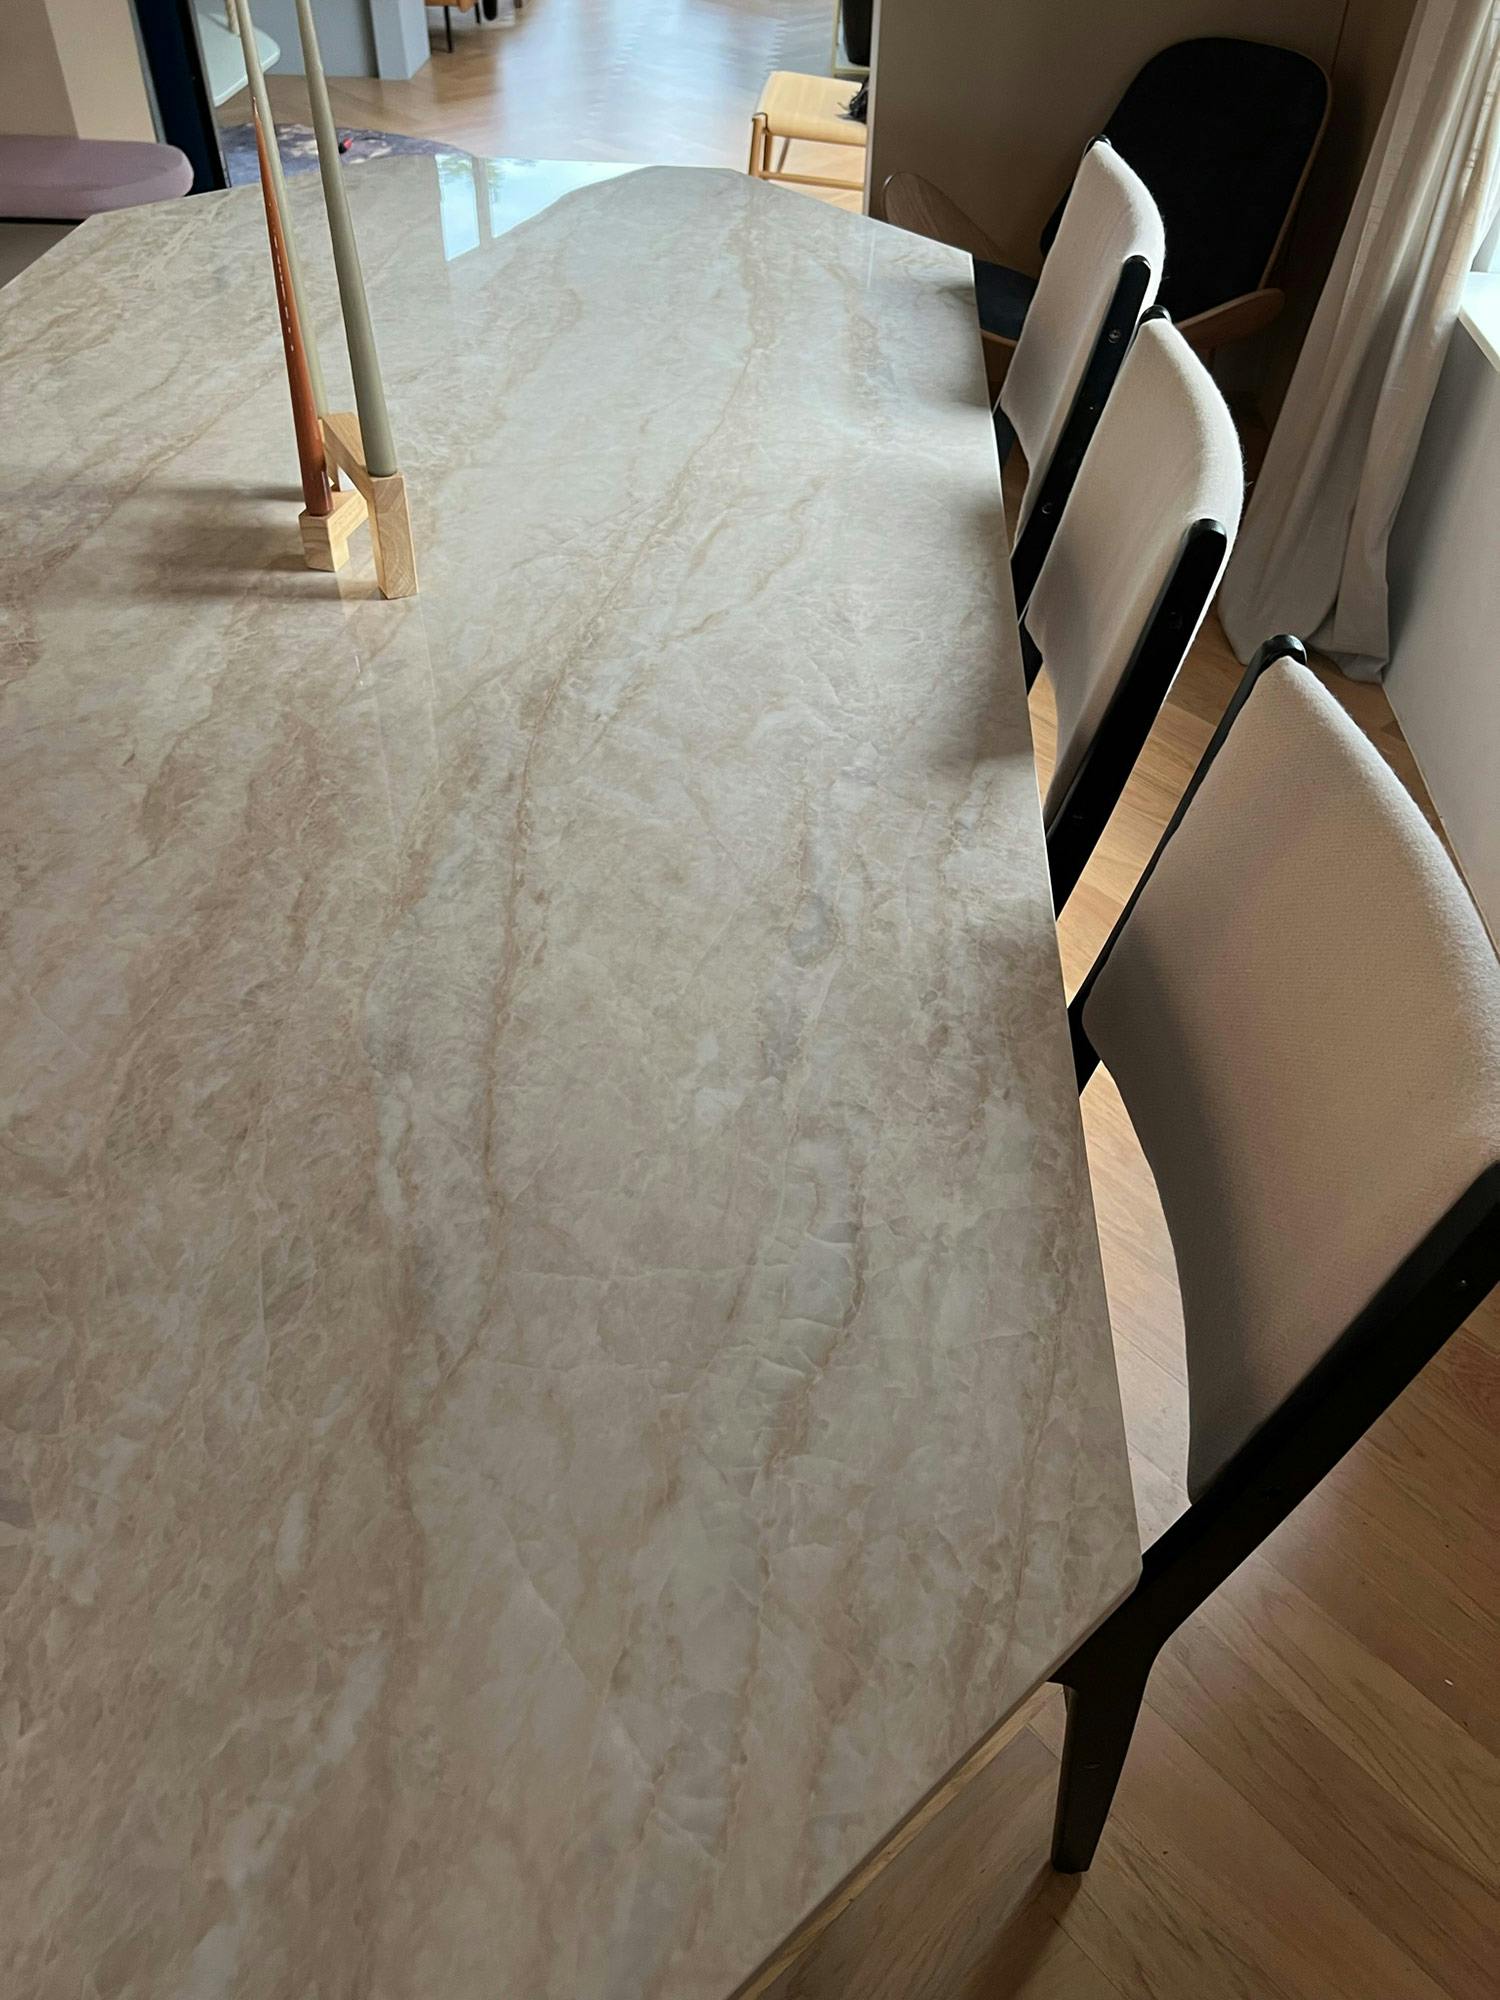 Numero immagine 35 della sezione corrente di An ordinary second-hand table becomes an eye-catching and elegant piece of furniture thanks to Dekton di Cosentino Italia